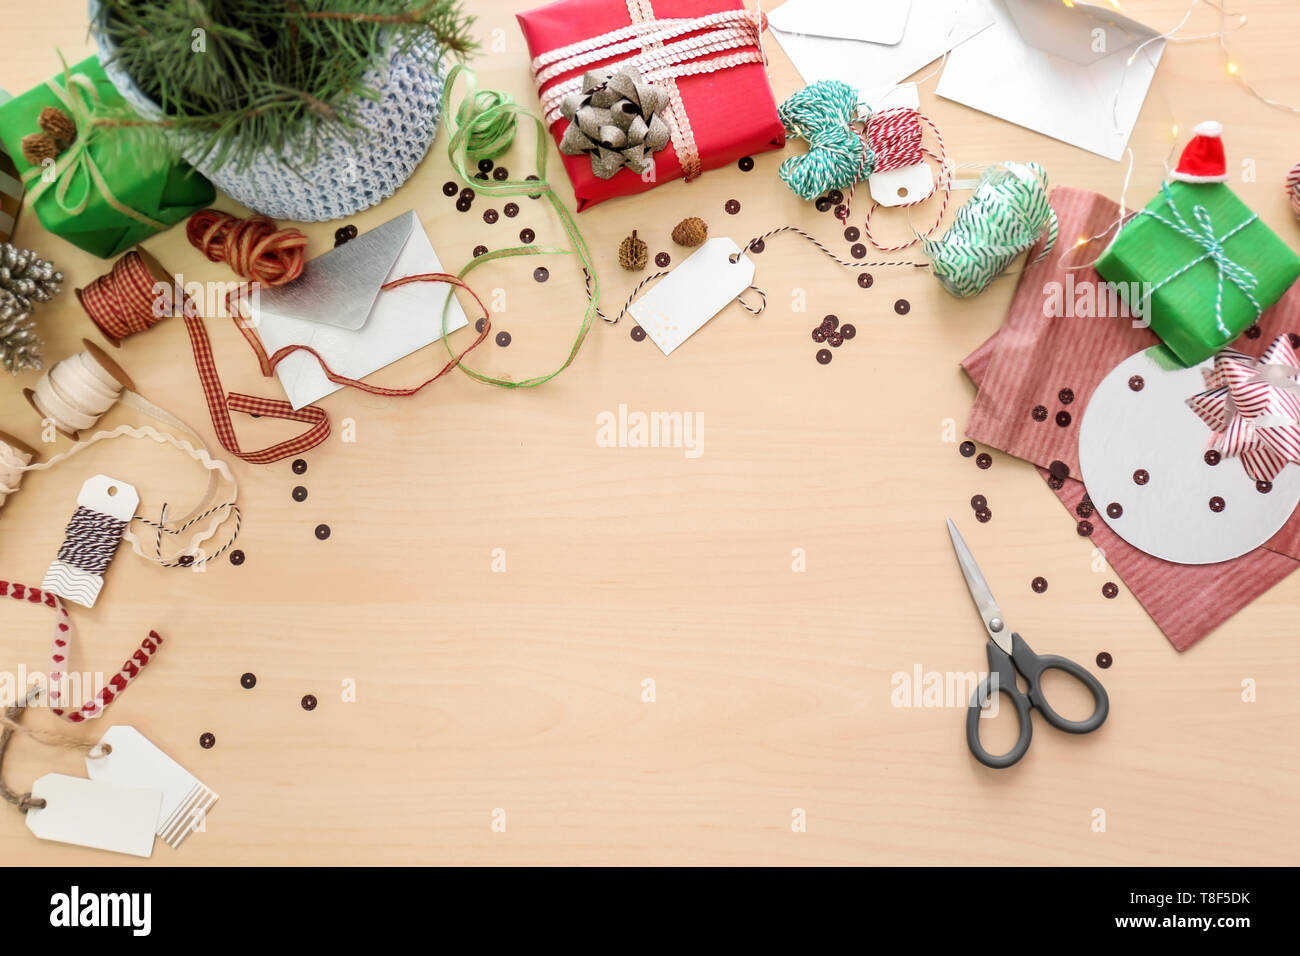 De beaux cadeaux de Noël et les matériaux d'emballage sur table lumineuse Banque D'Images